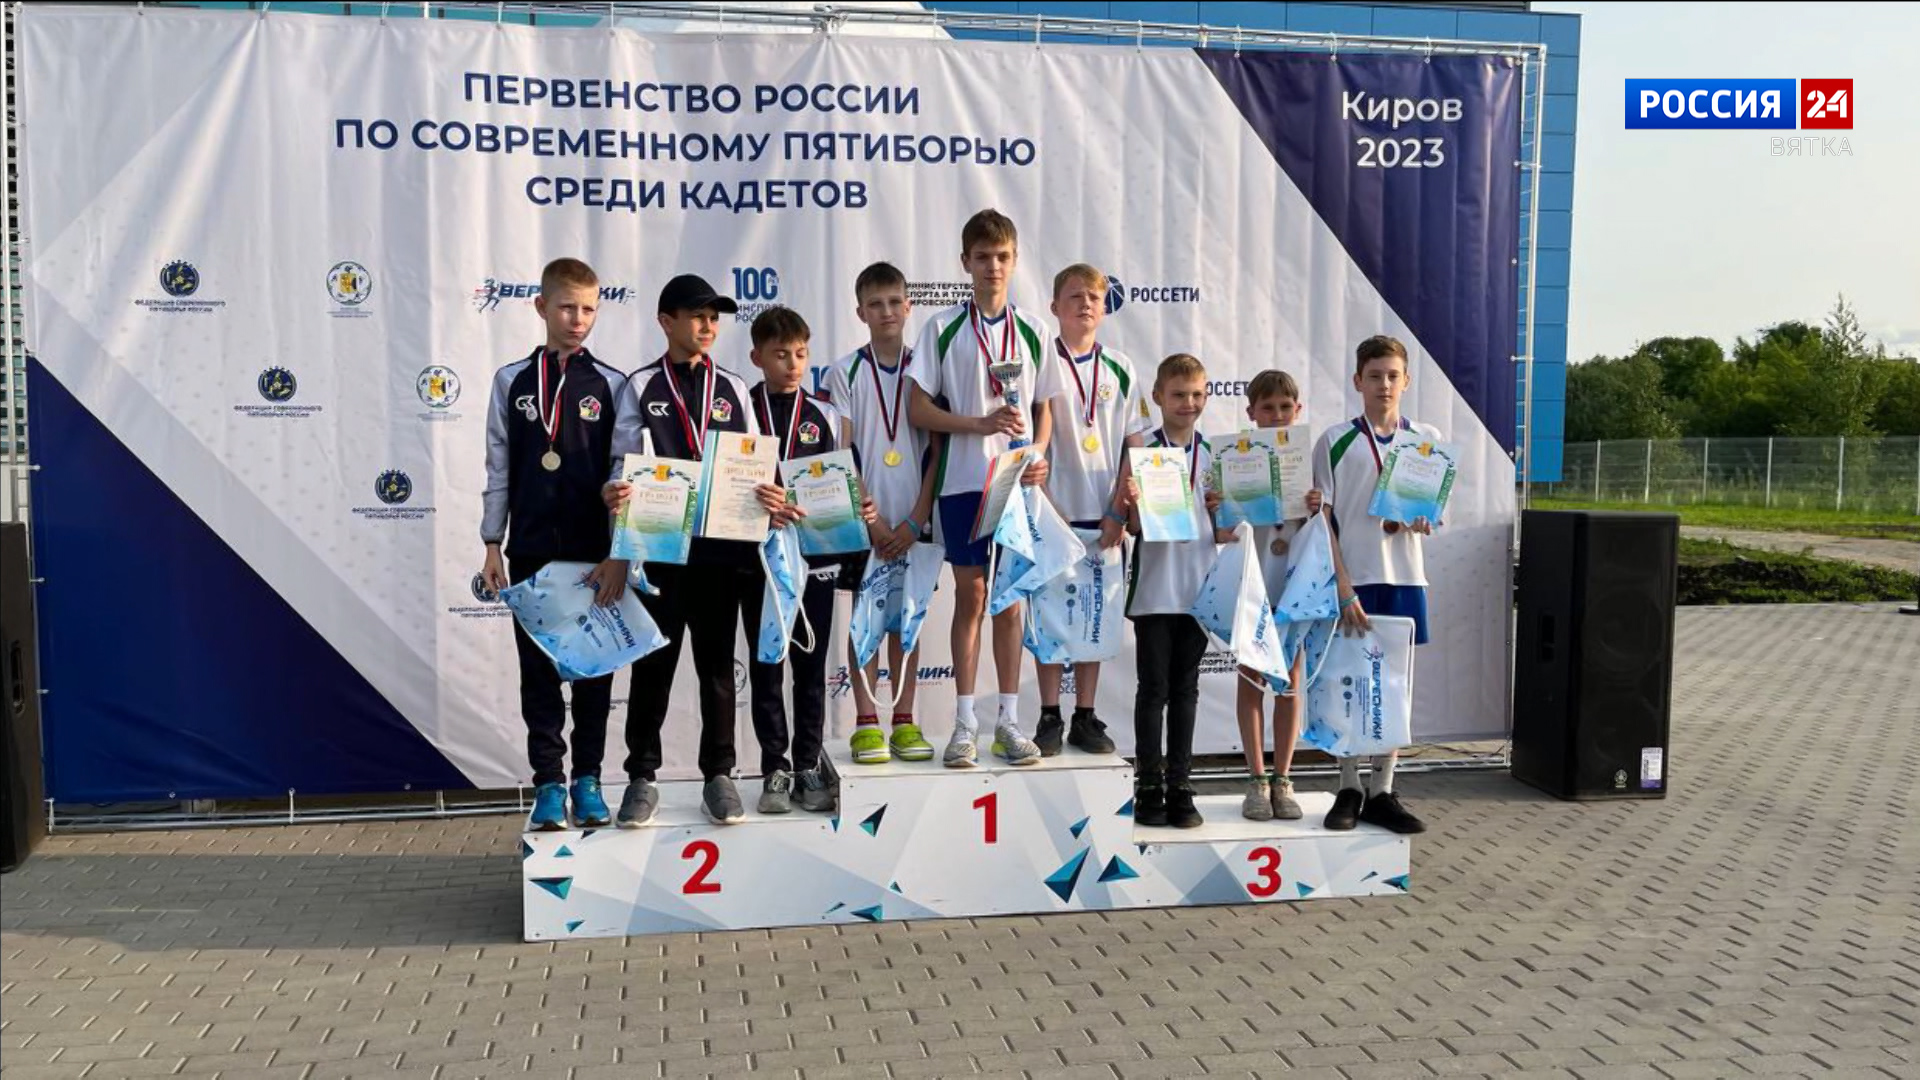 Кировчане успешно выступили на первенстве России по современному пятиборью